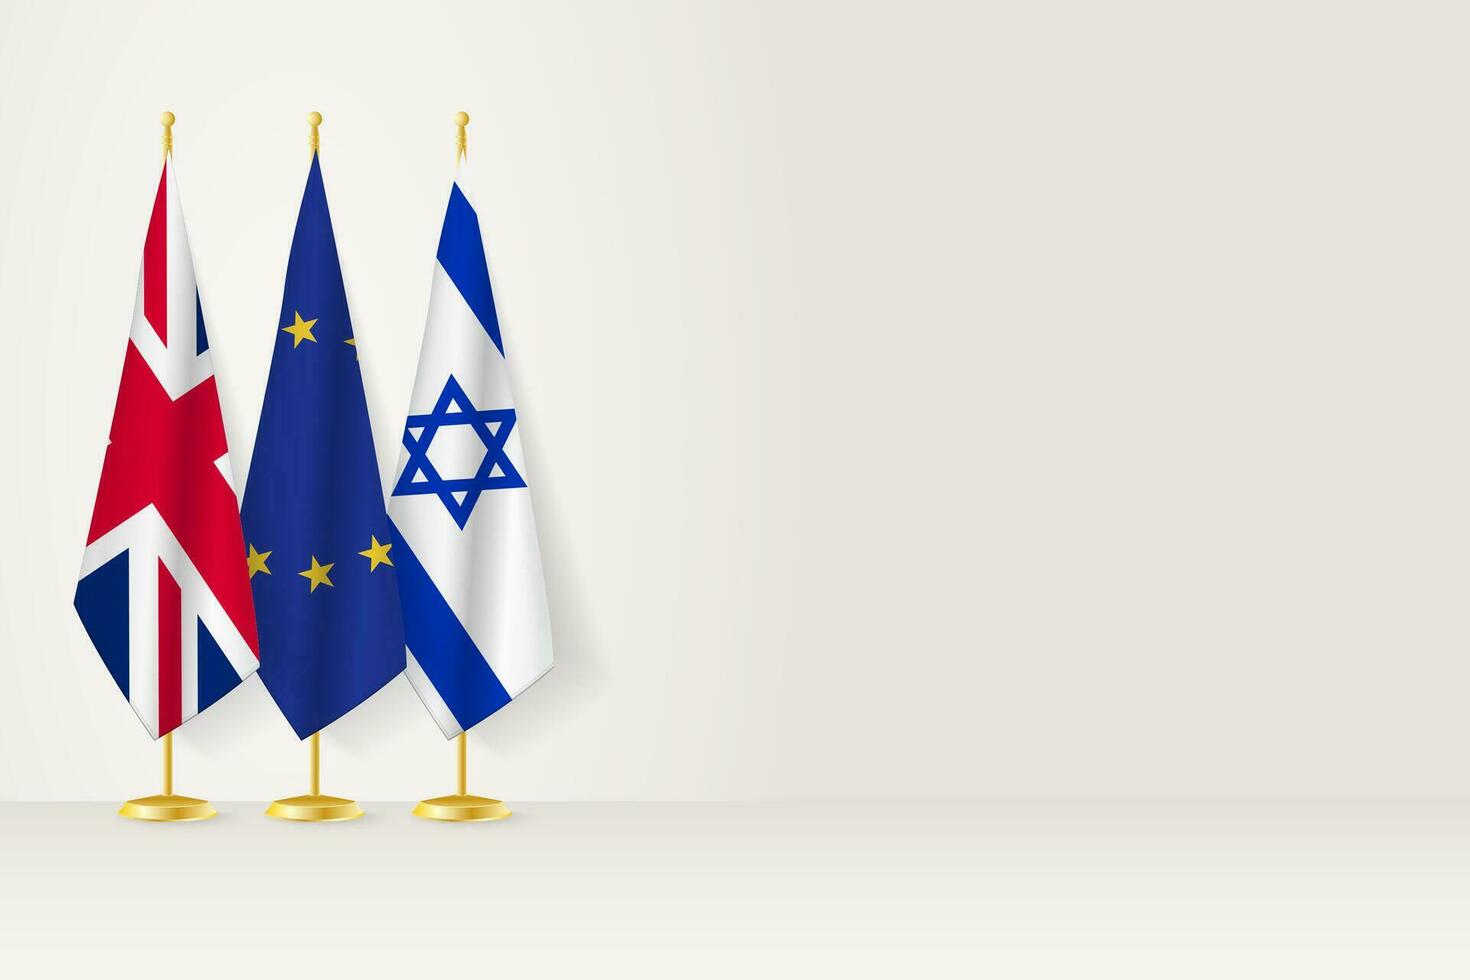 banderas de unido Reino, europeo Unión y Israel estar en fila en interior asta de bandera. vector